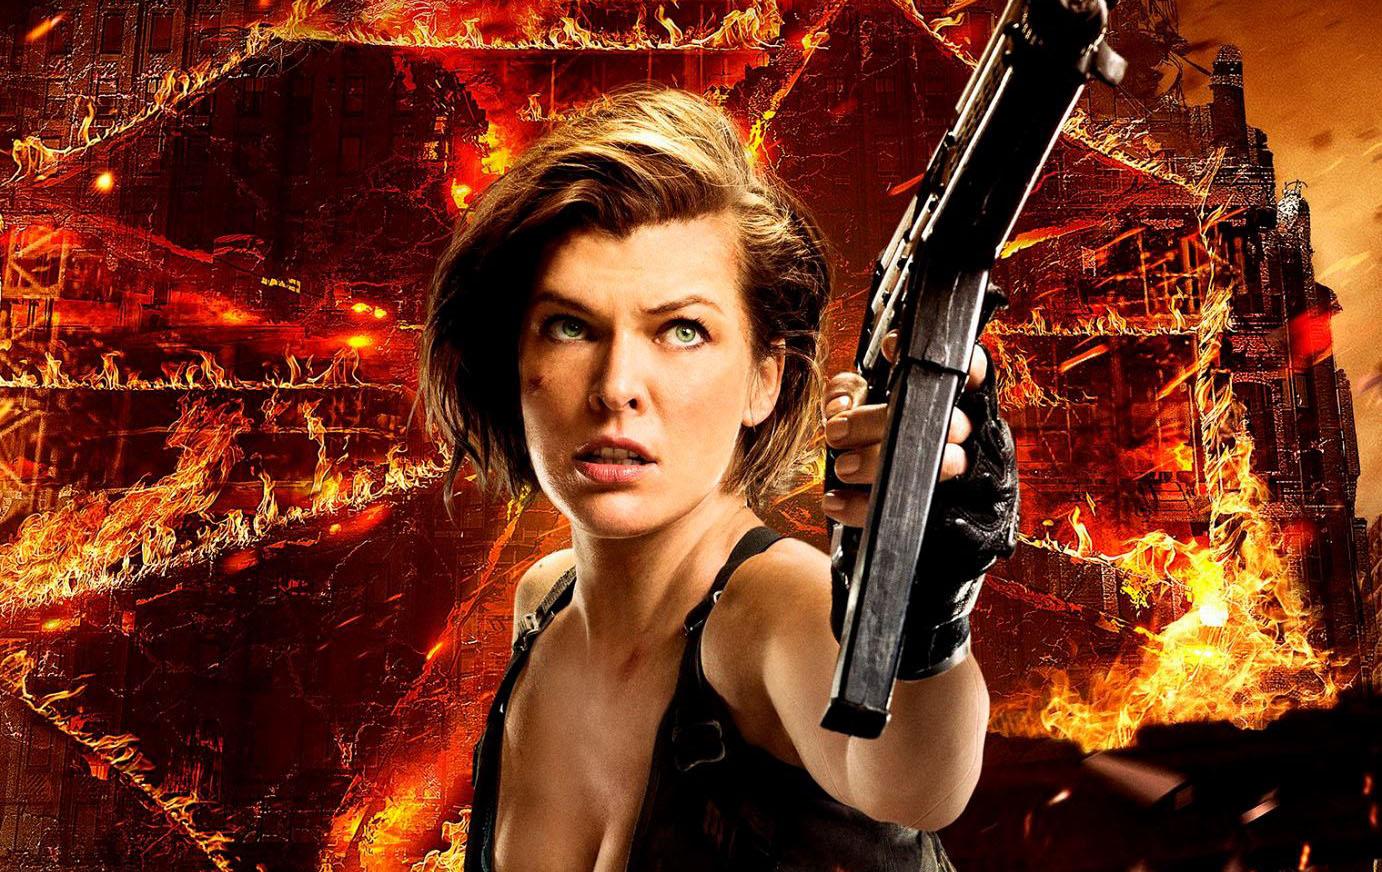 Resident Evil 6: O Capítulo Final ganha experiência em 360°